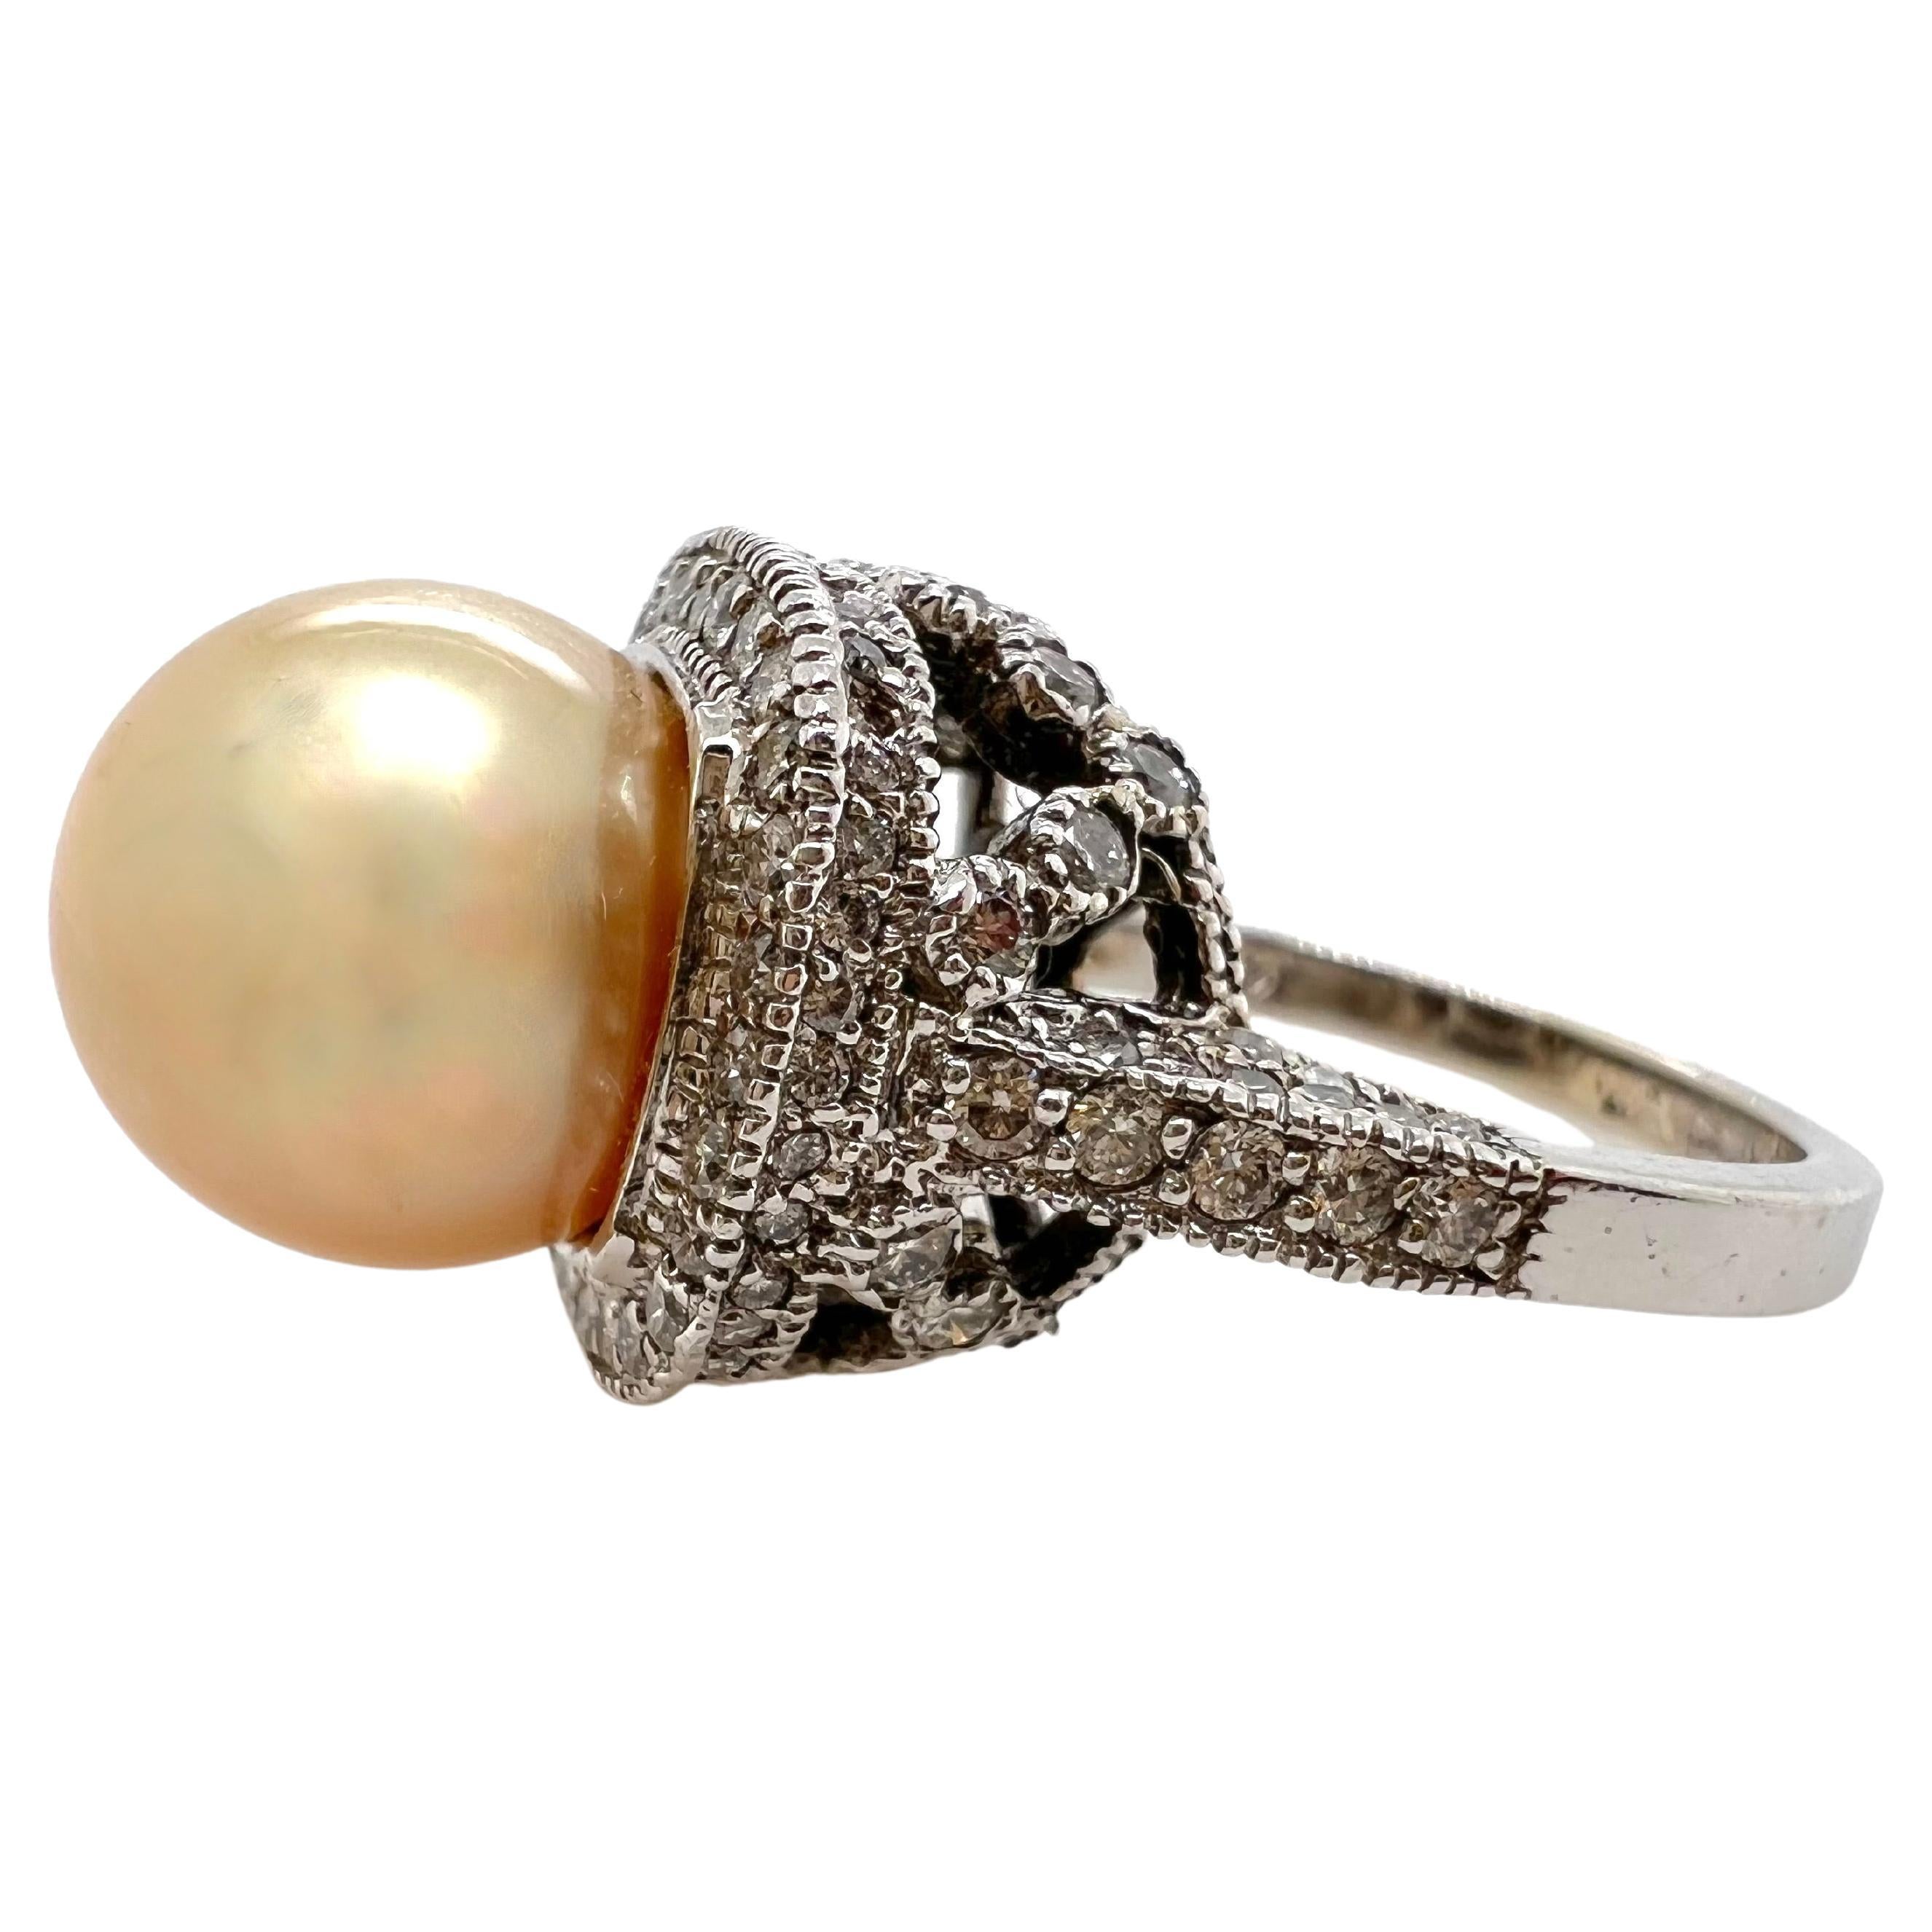 Diese wunderschöne, goldene Südseeperle ist auf einem Bett aus Diamanten in dieser kunstvollen Fassung gefasst, die den Glanz und die Farbe der Perle hervorhebt.  Die Perle ist 11,50 mm groß und sitzt in einer schönen Fassung mit Diamanten auf dem